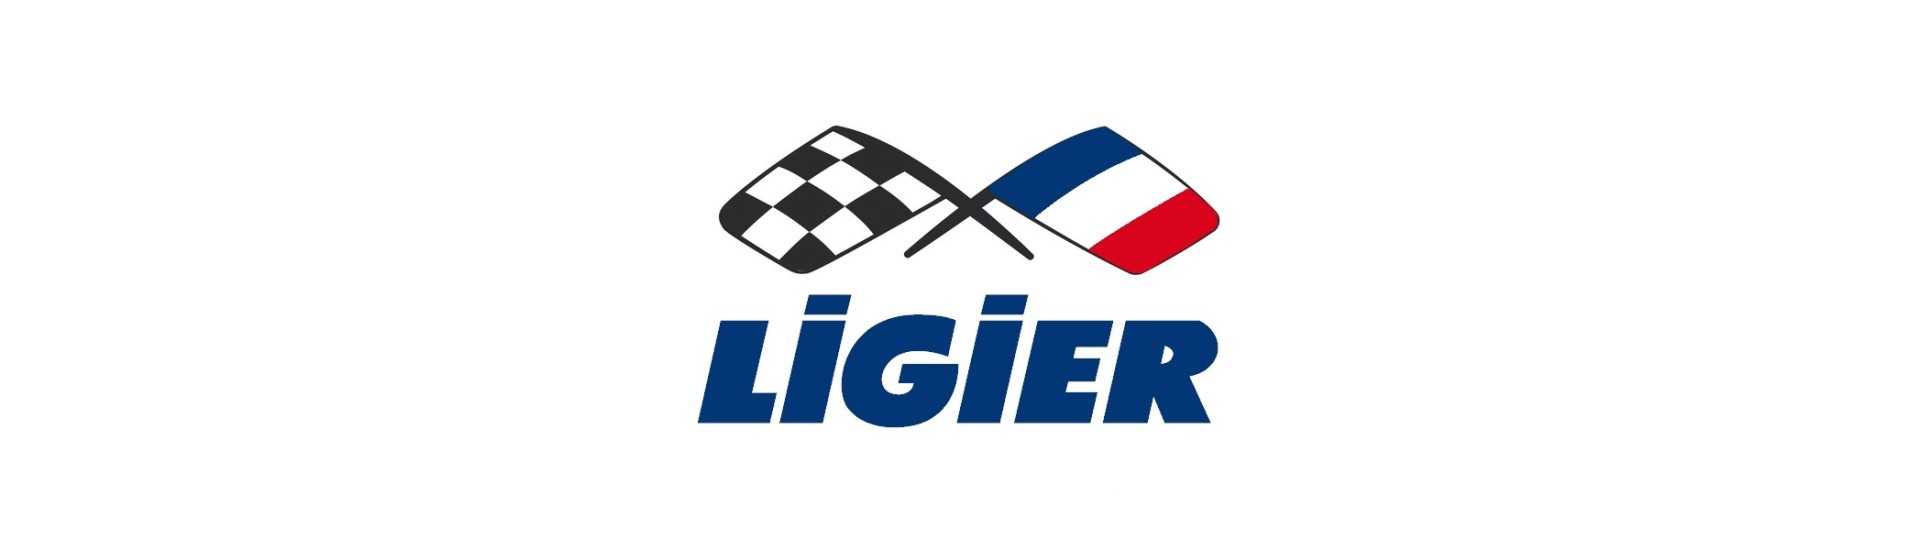 Ovi kattaa parhaan auton hinnan ilman lupaa Ligier